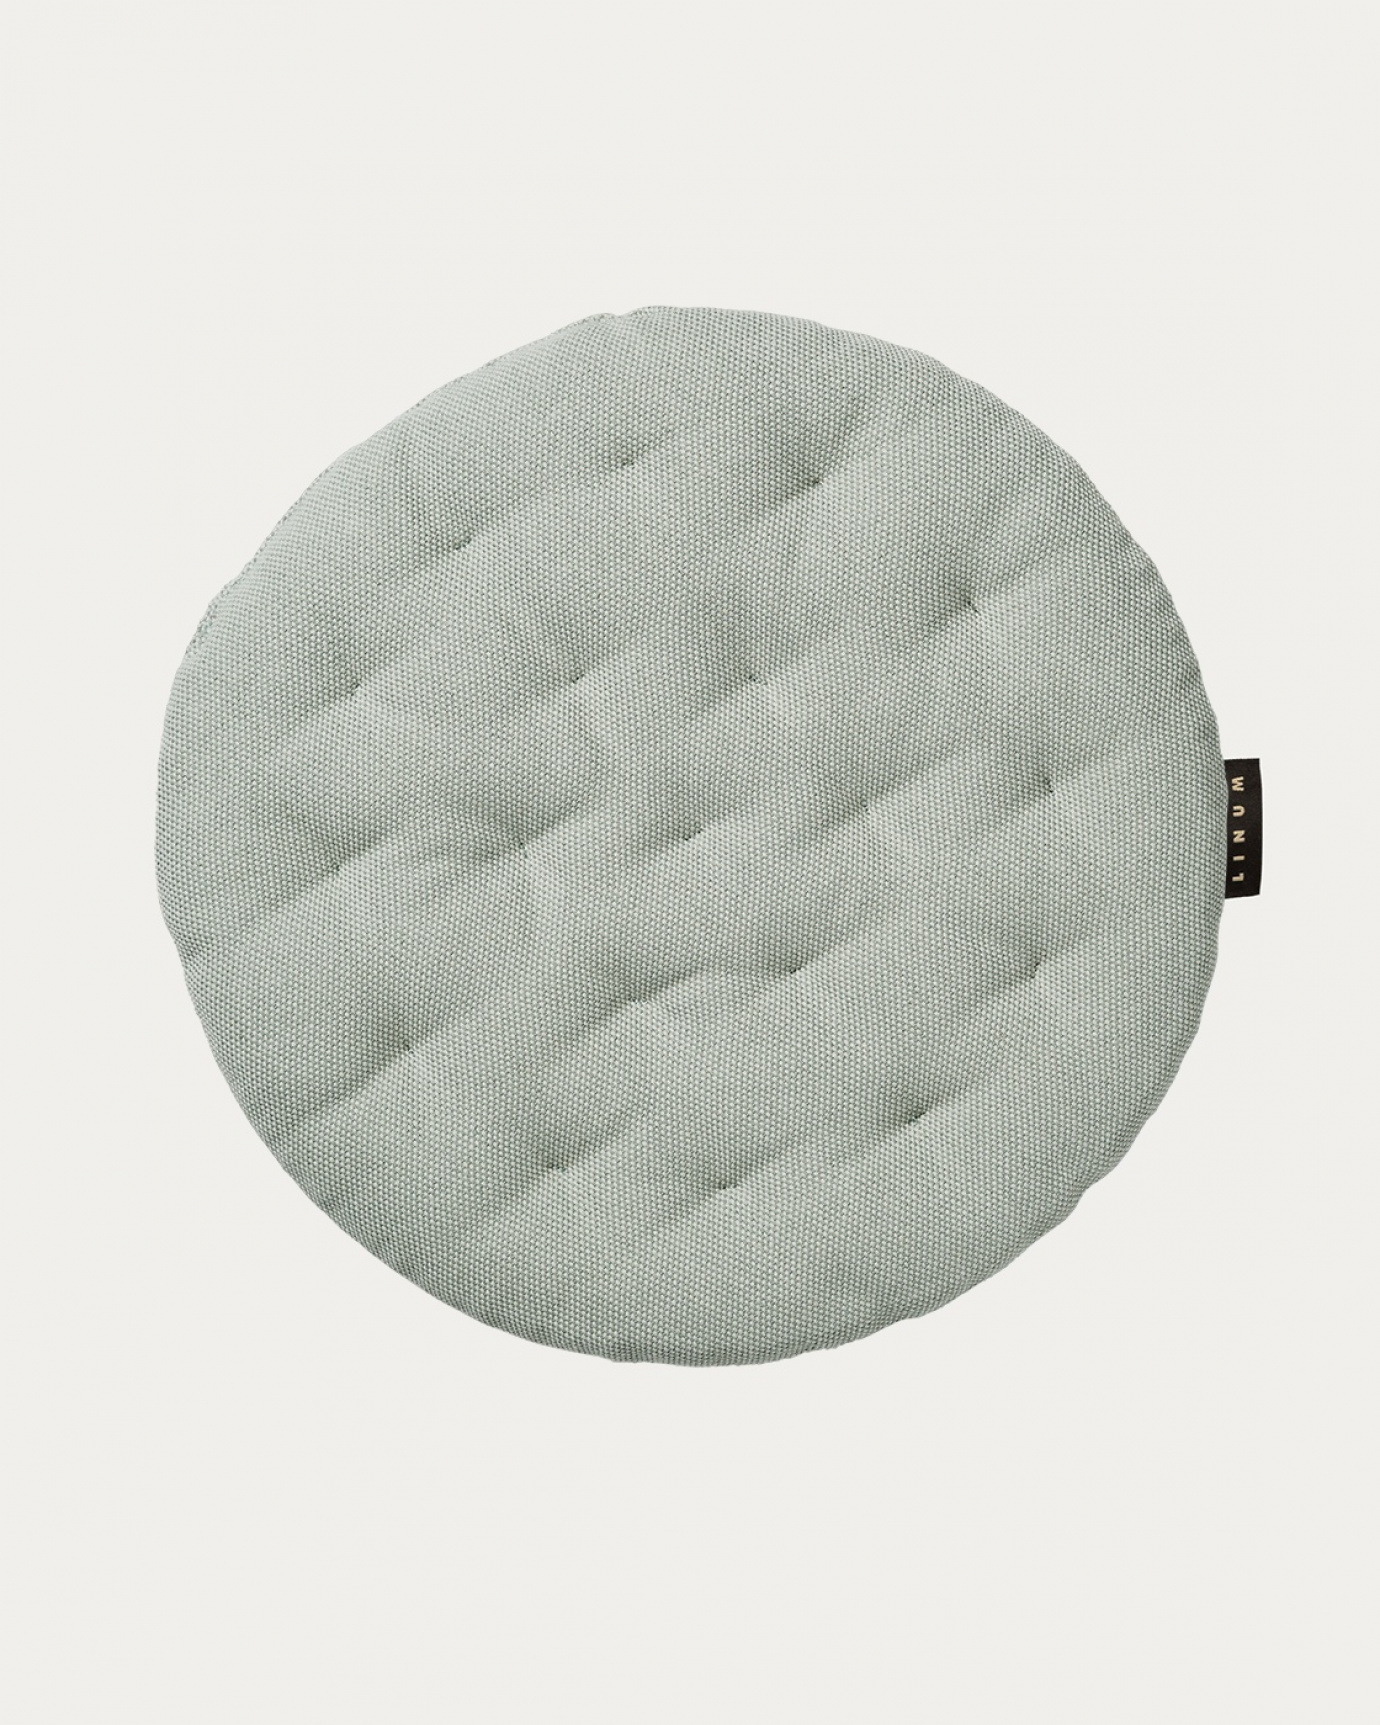 Produktbild helles eisgrün PEPPER Sitzkissen aus weicher Baumwolle mit Füllung aus recyceltem Polyester von LINUM DESIGN. Größe ø37 cm.